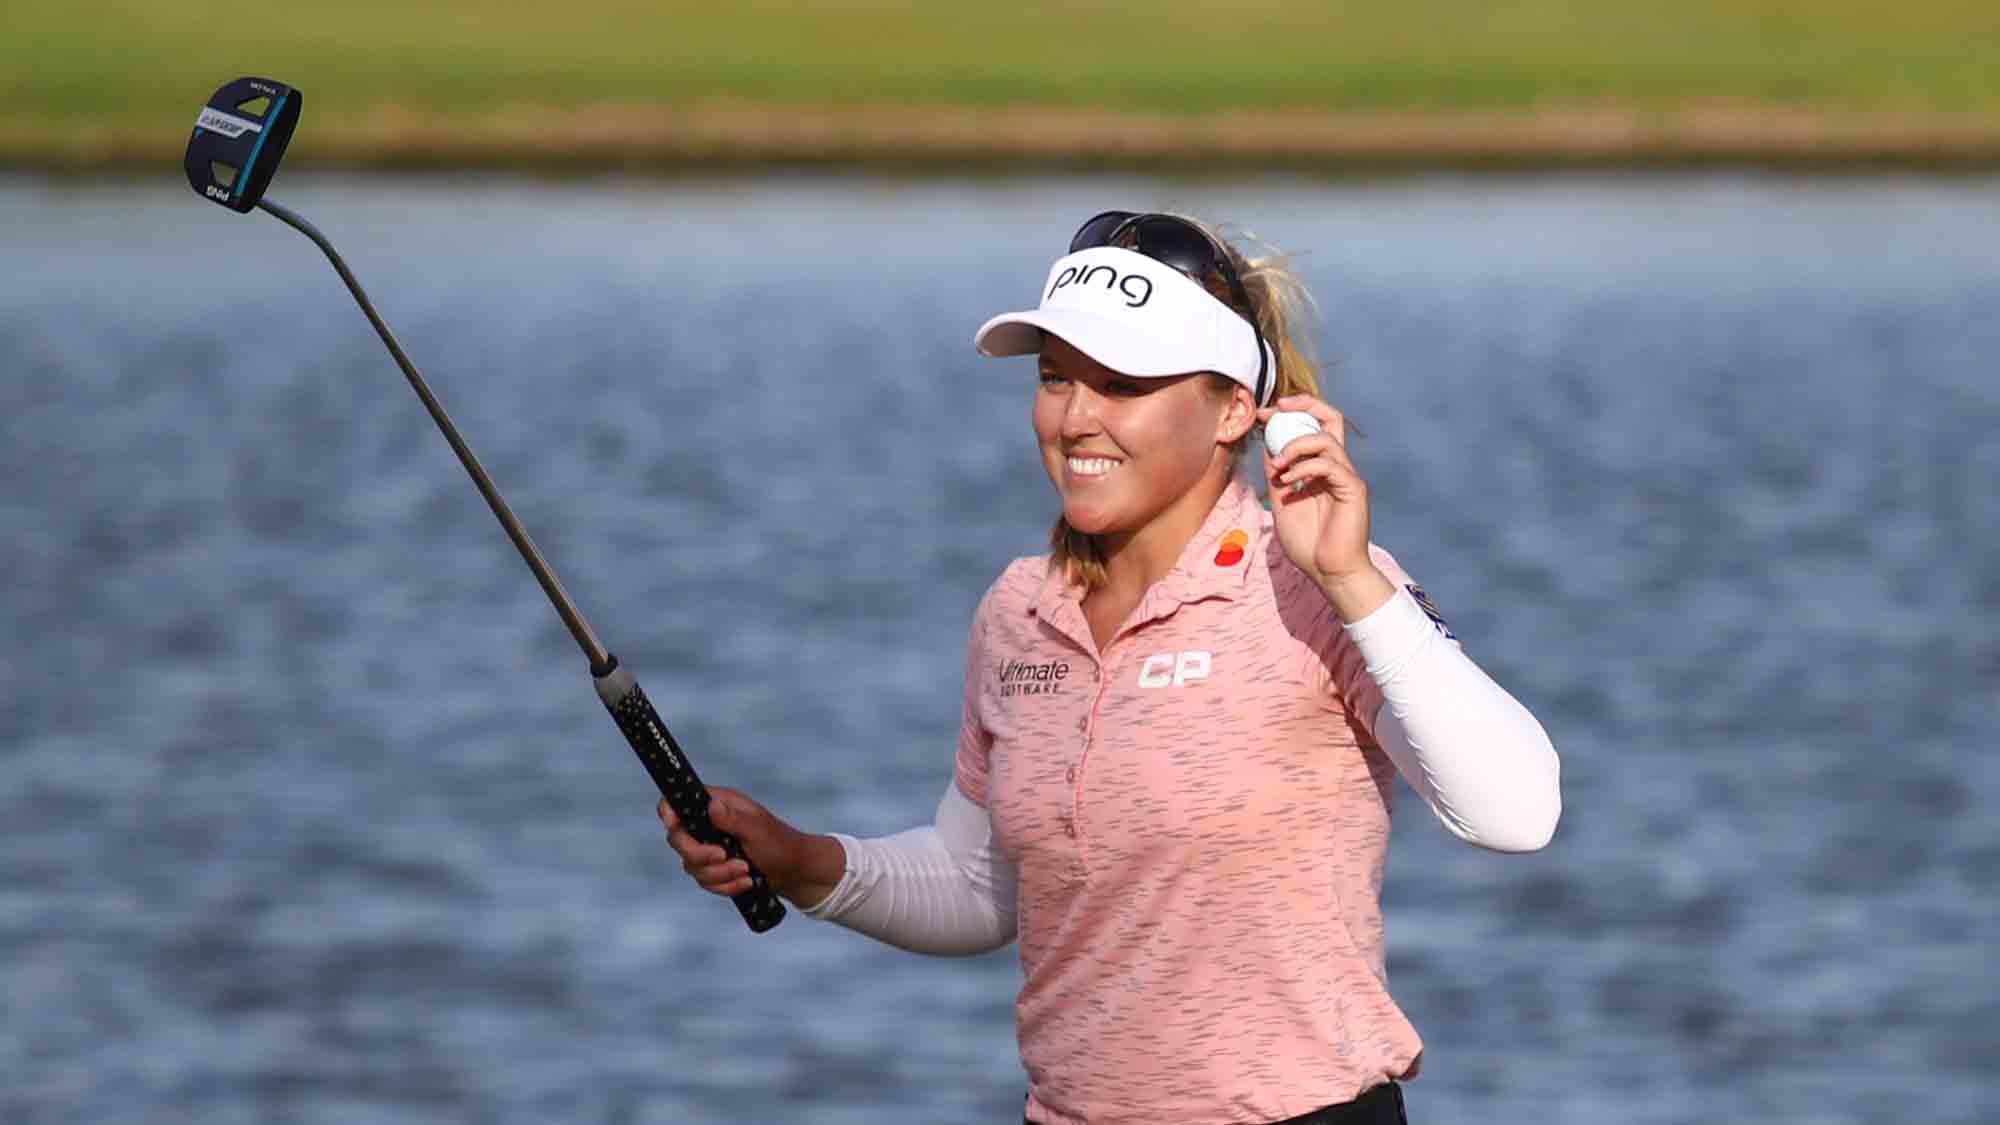 Brooke Henderson winningest Canadian pro golfer with Meijer